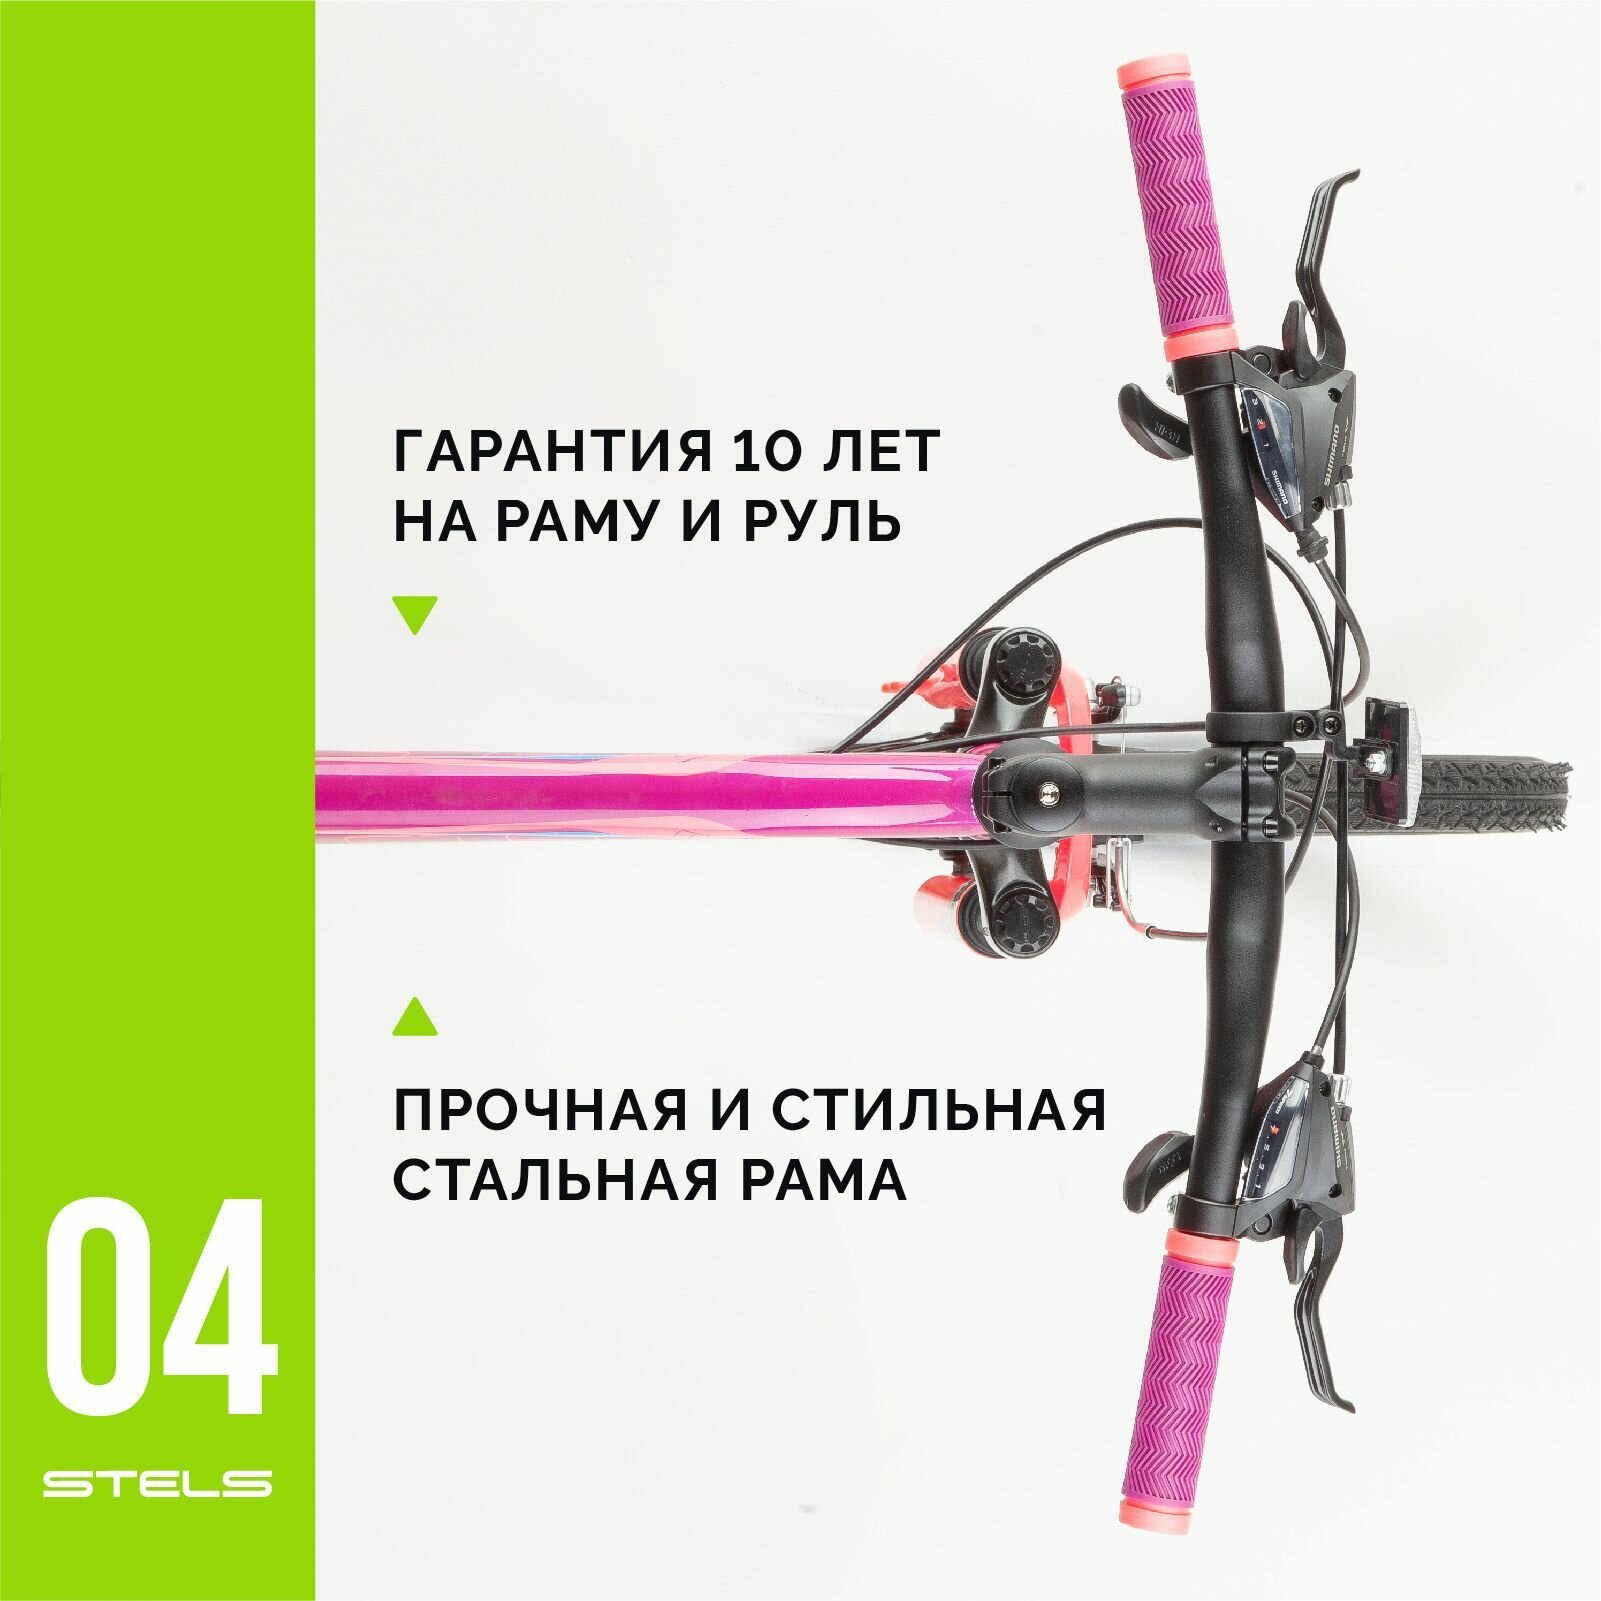 Велосипед горный женский STELS Miss-5000 V 26" V050, Фиолетовый-розовый, рама 18"